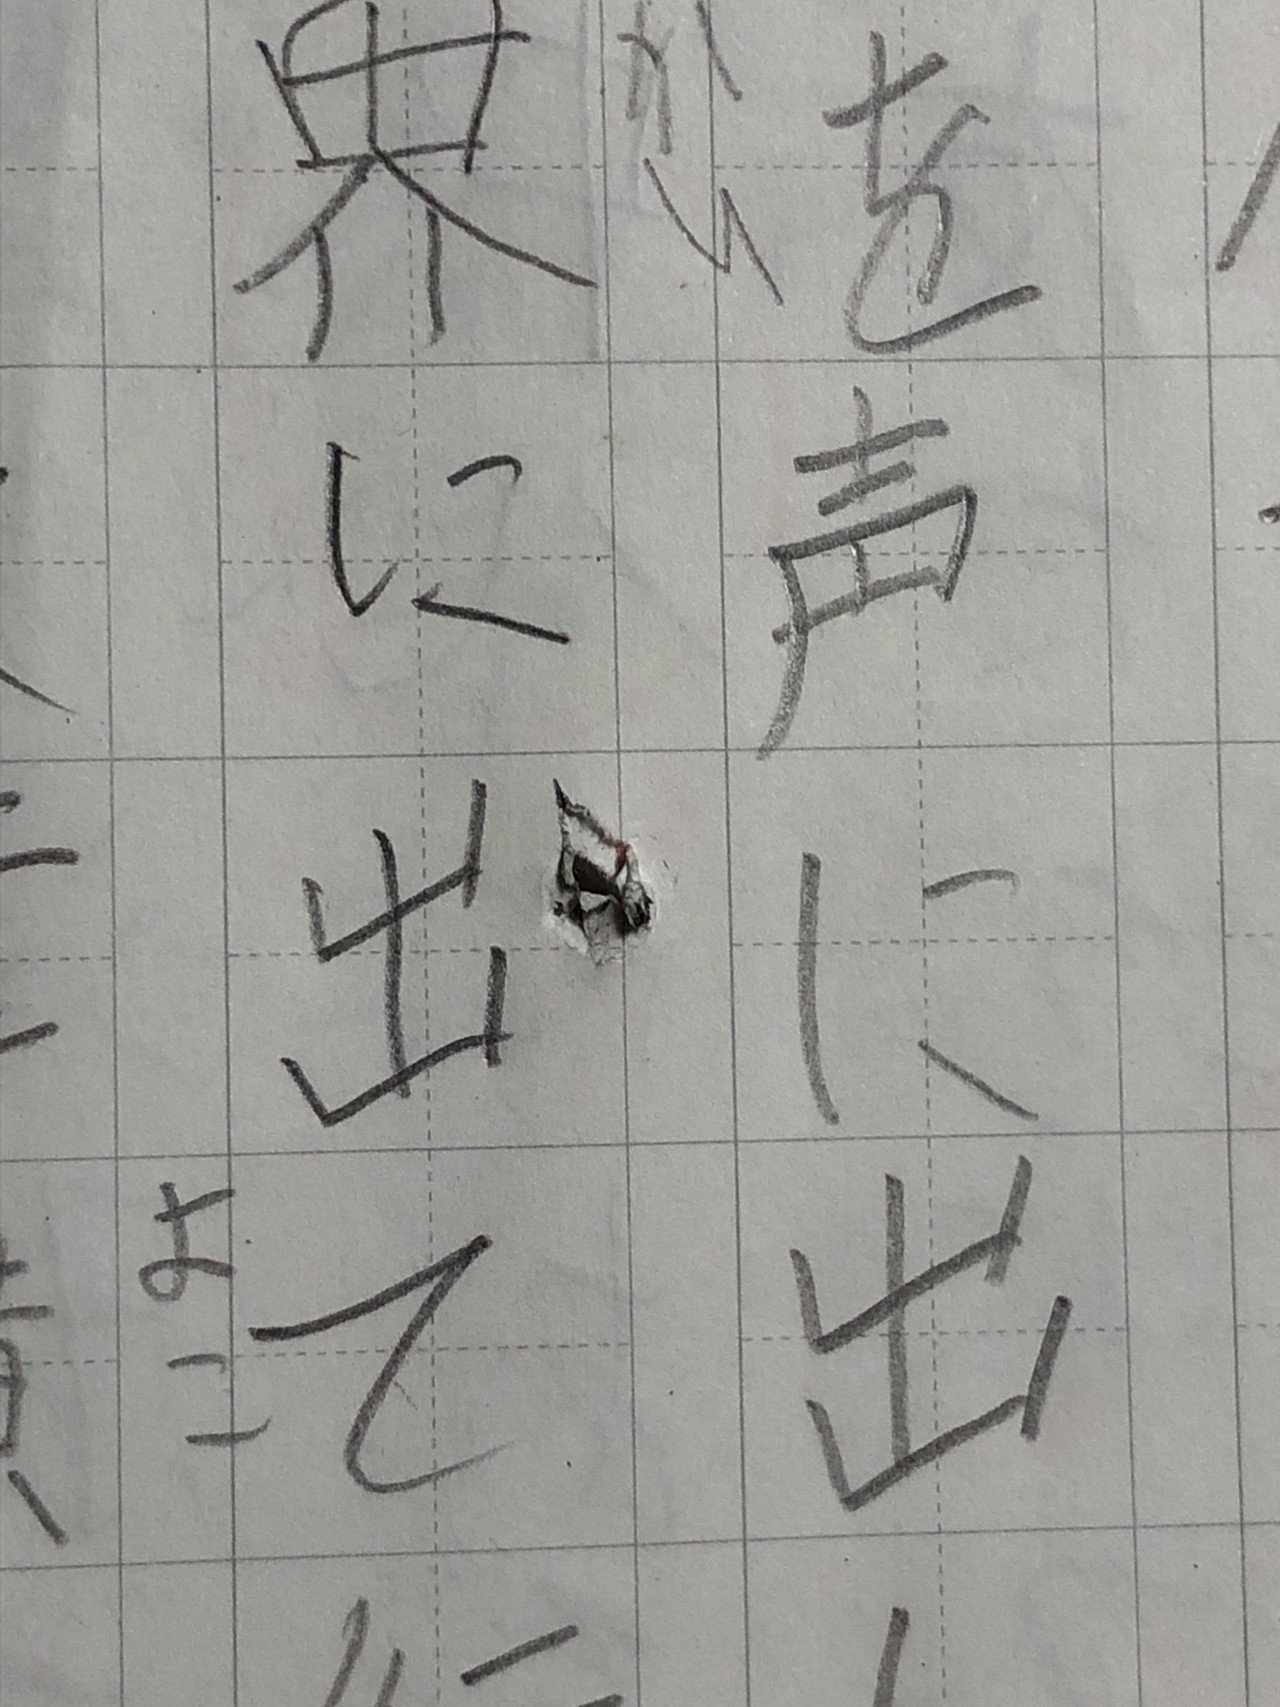 親とは 忍耐を学ばせてもらえるものだと 自分が悪いくせに漢字ノートに鉛筆を突き刺して怒りを露わに する理不尽な子供の振る舞いを見て改めて想う A H Note